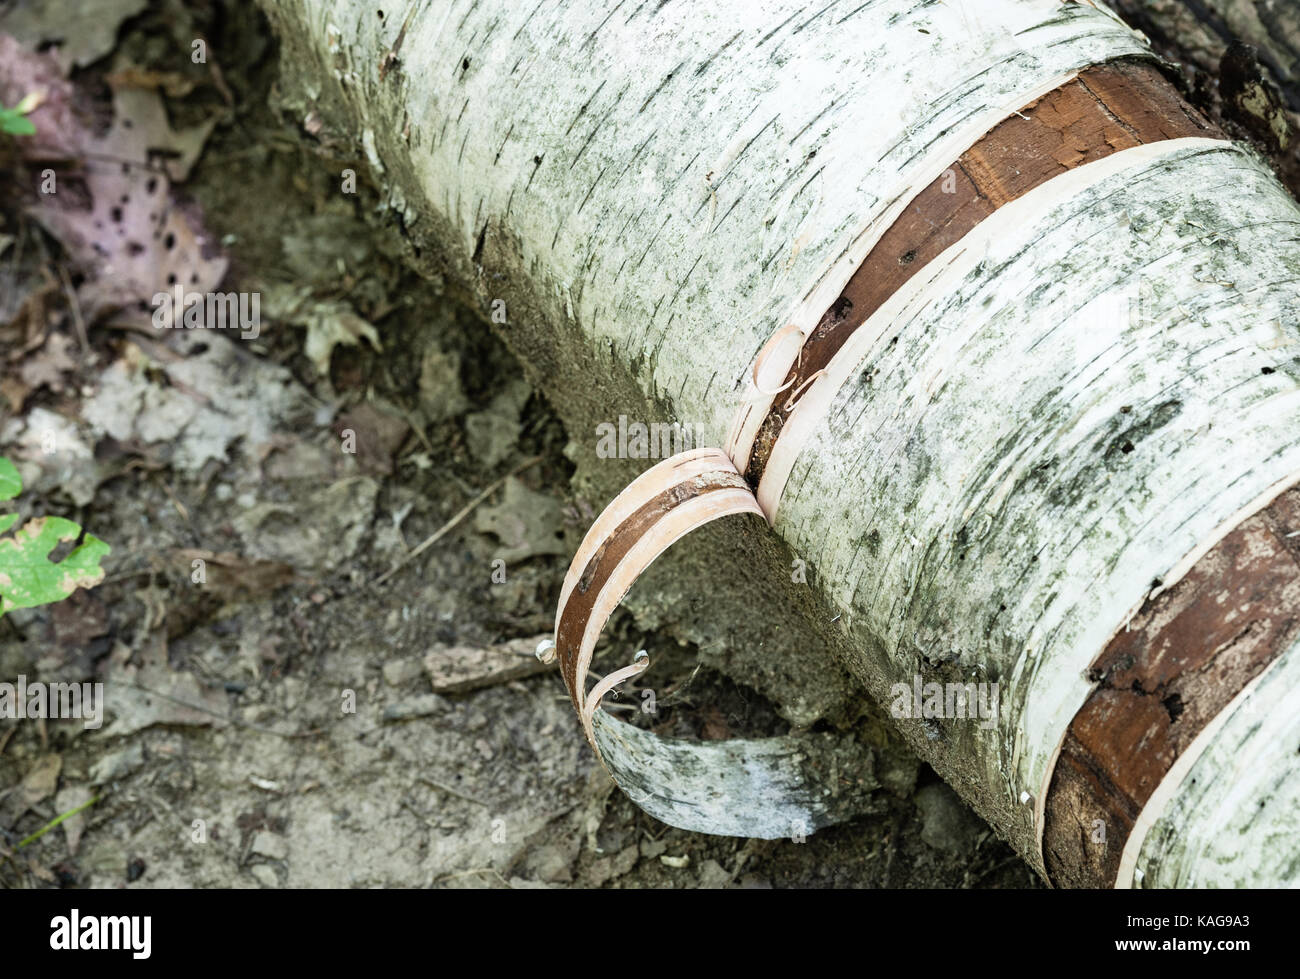 Close-up dettaglio della corteccia la pelatura di registro di betulla sul terreno fangoso. Foto Stock